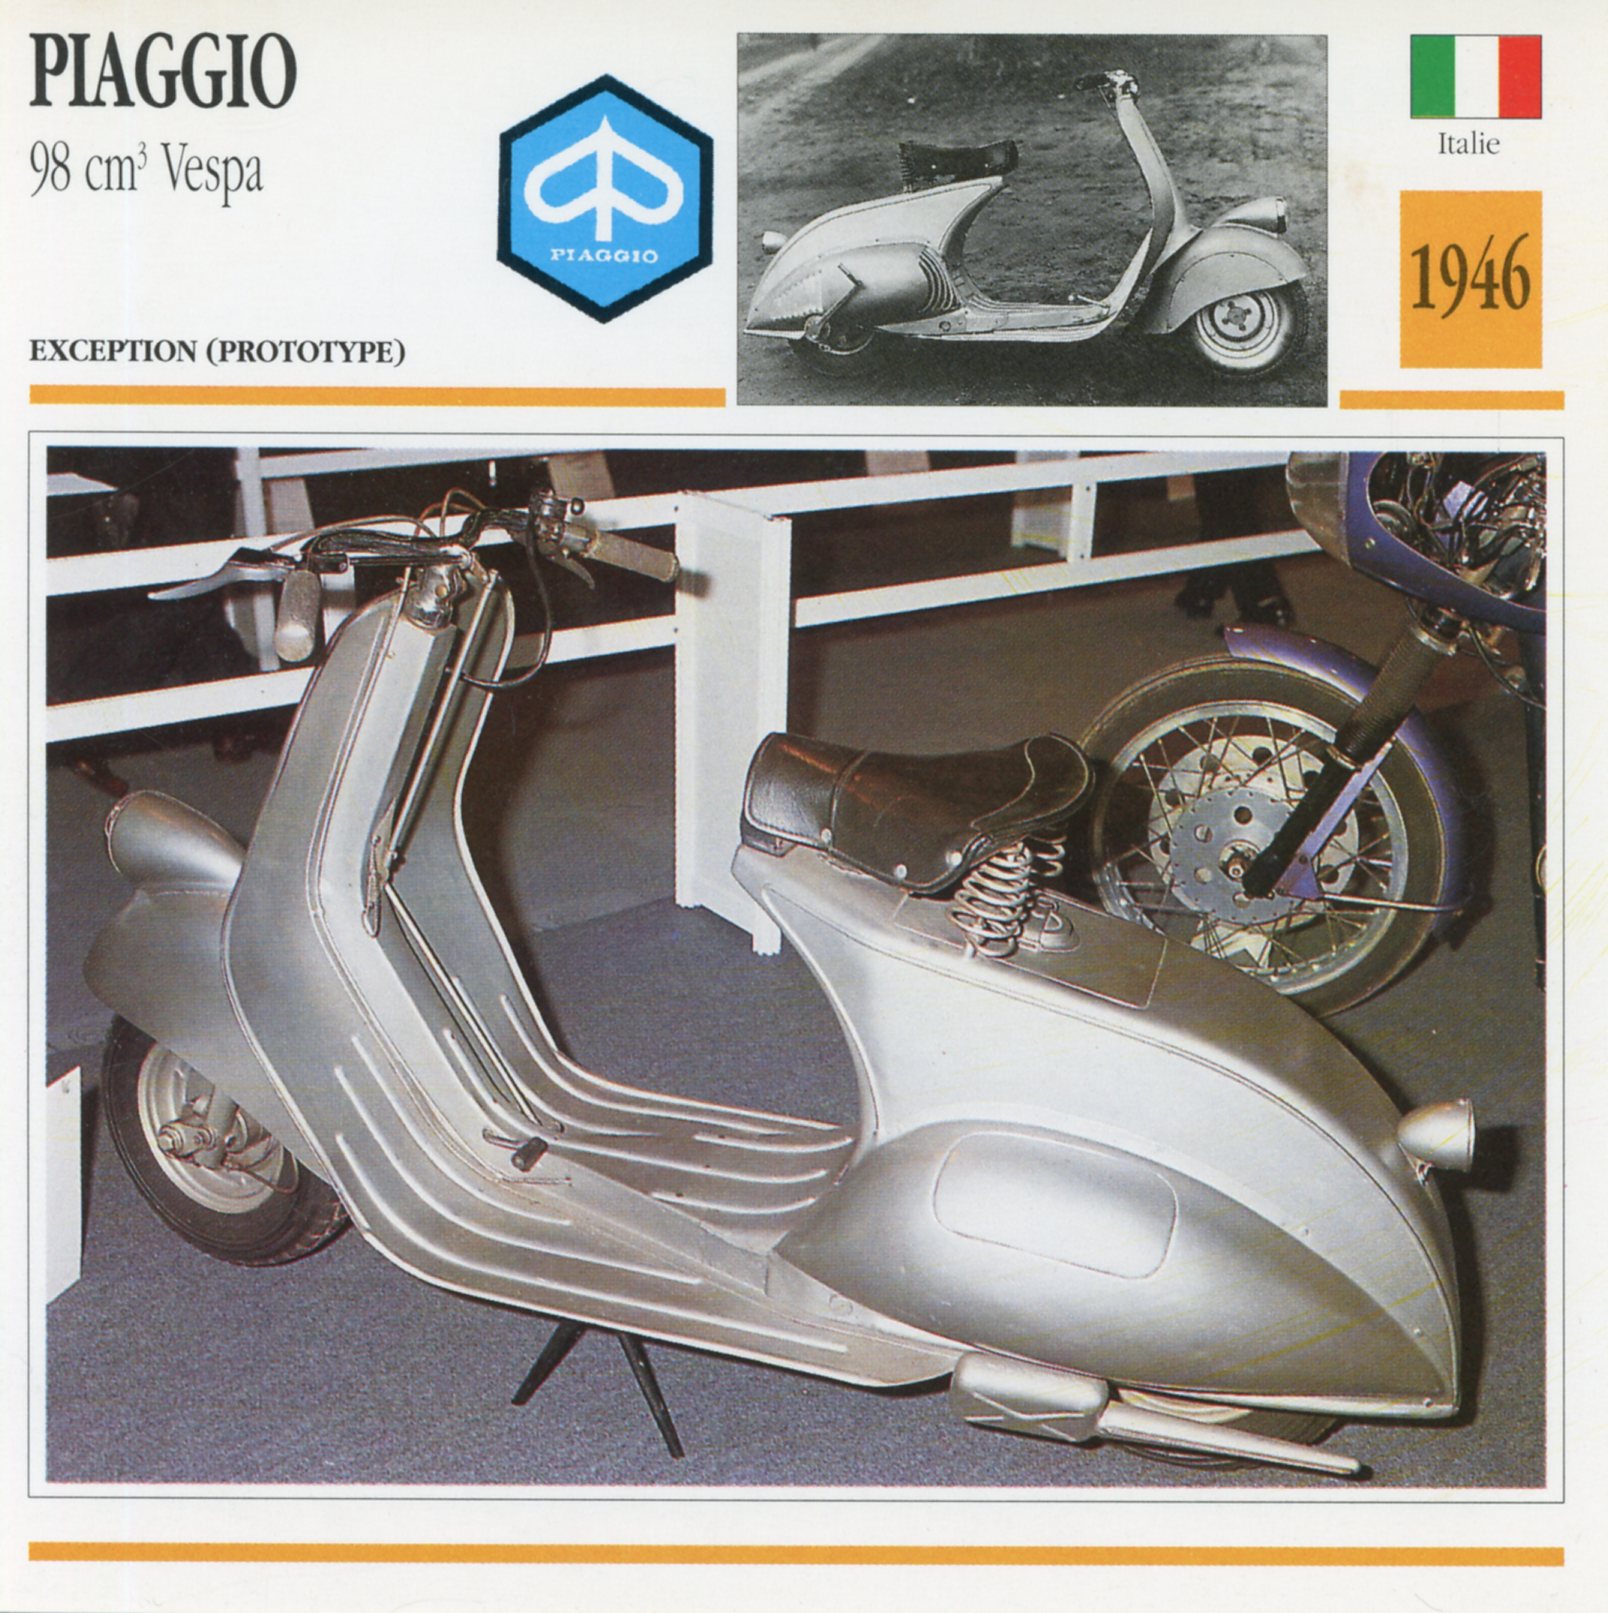 PIAGGIO-VESPA-1946-LEMASTERBROCKERS-FICHE-SCOOTER-CARD-ATLAS